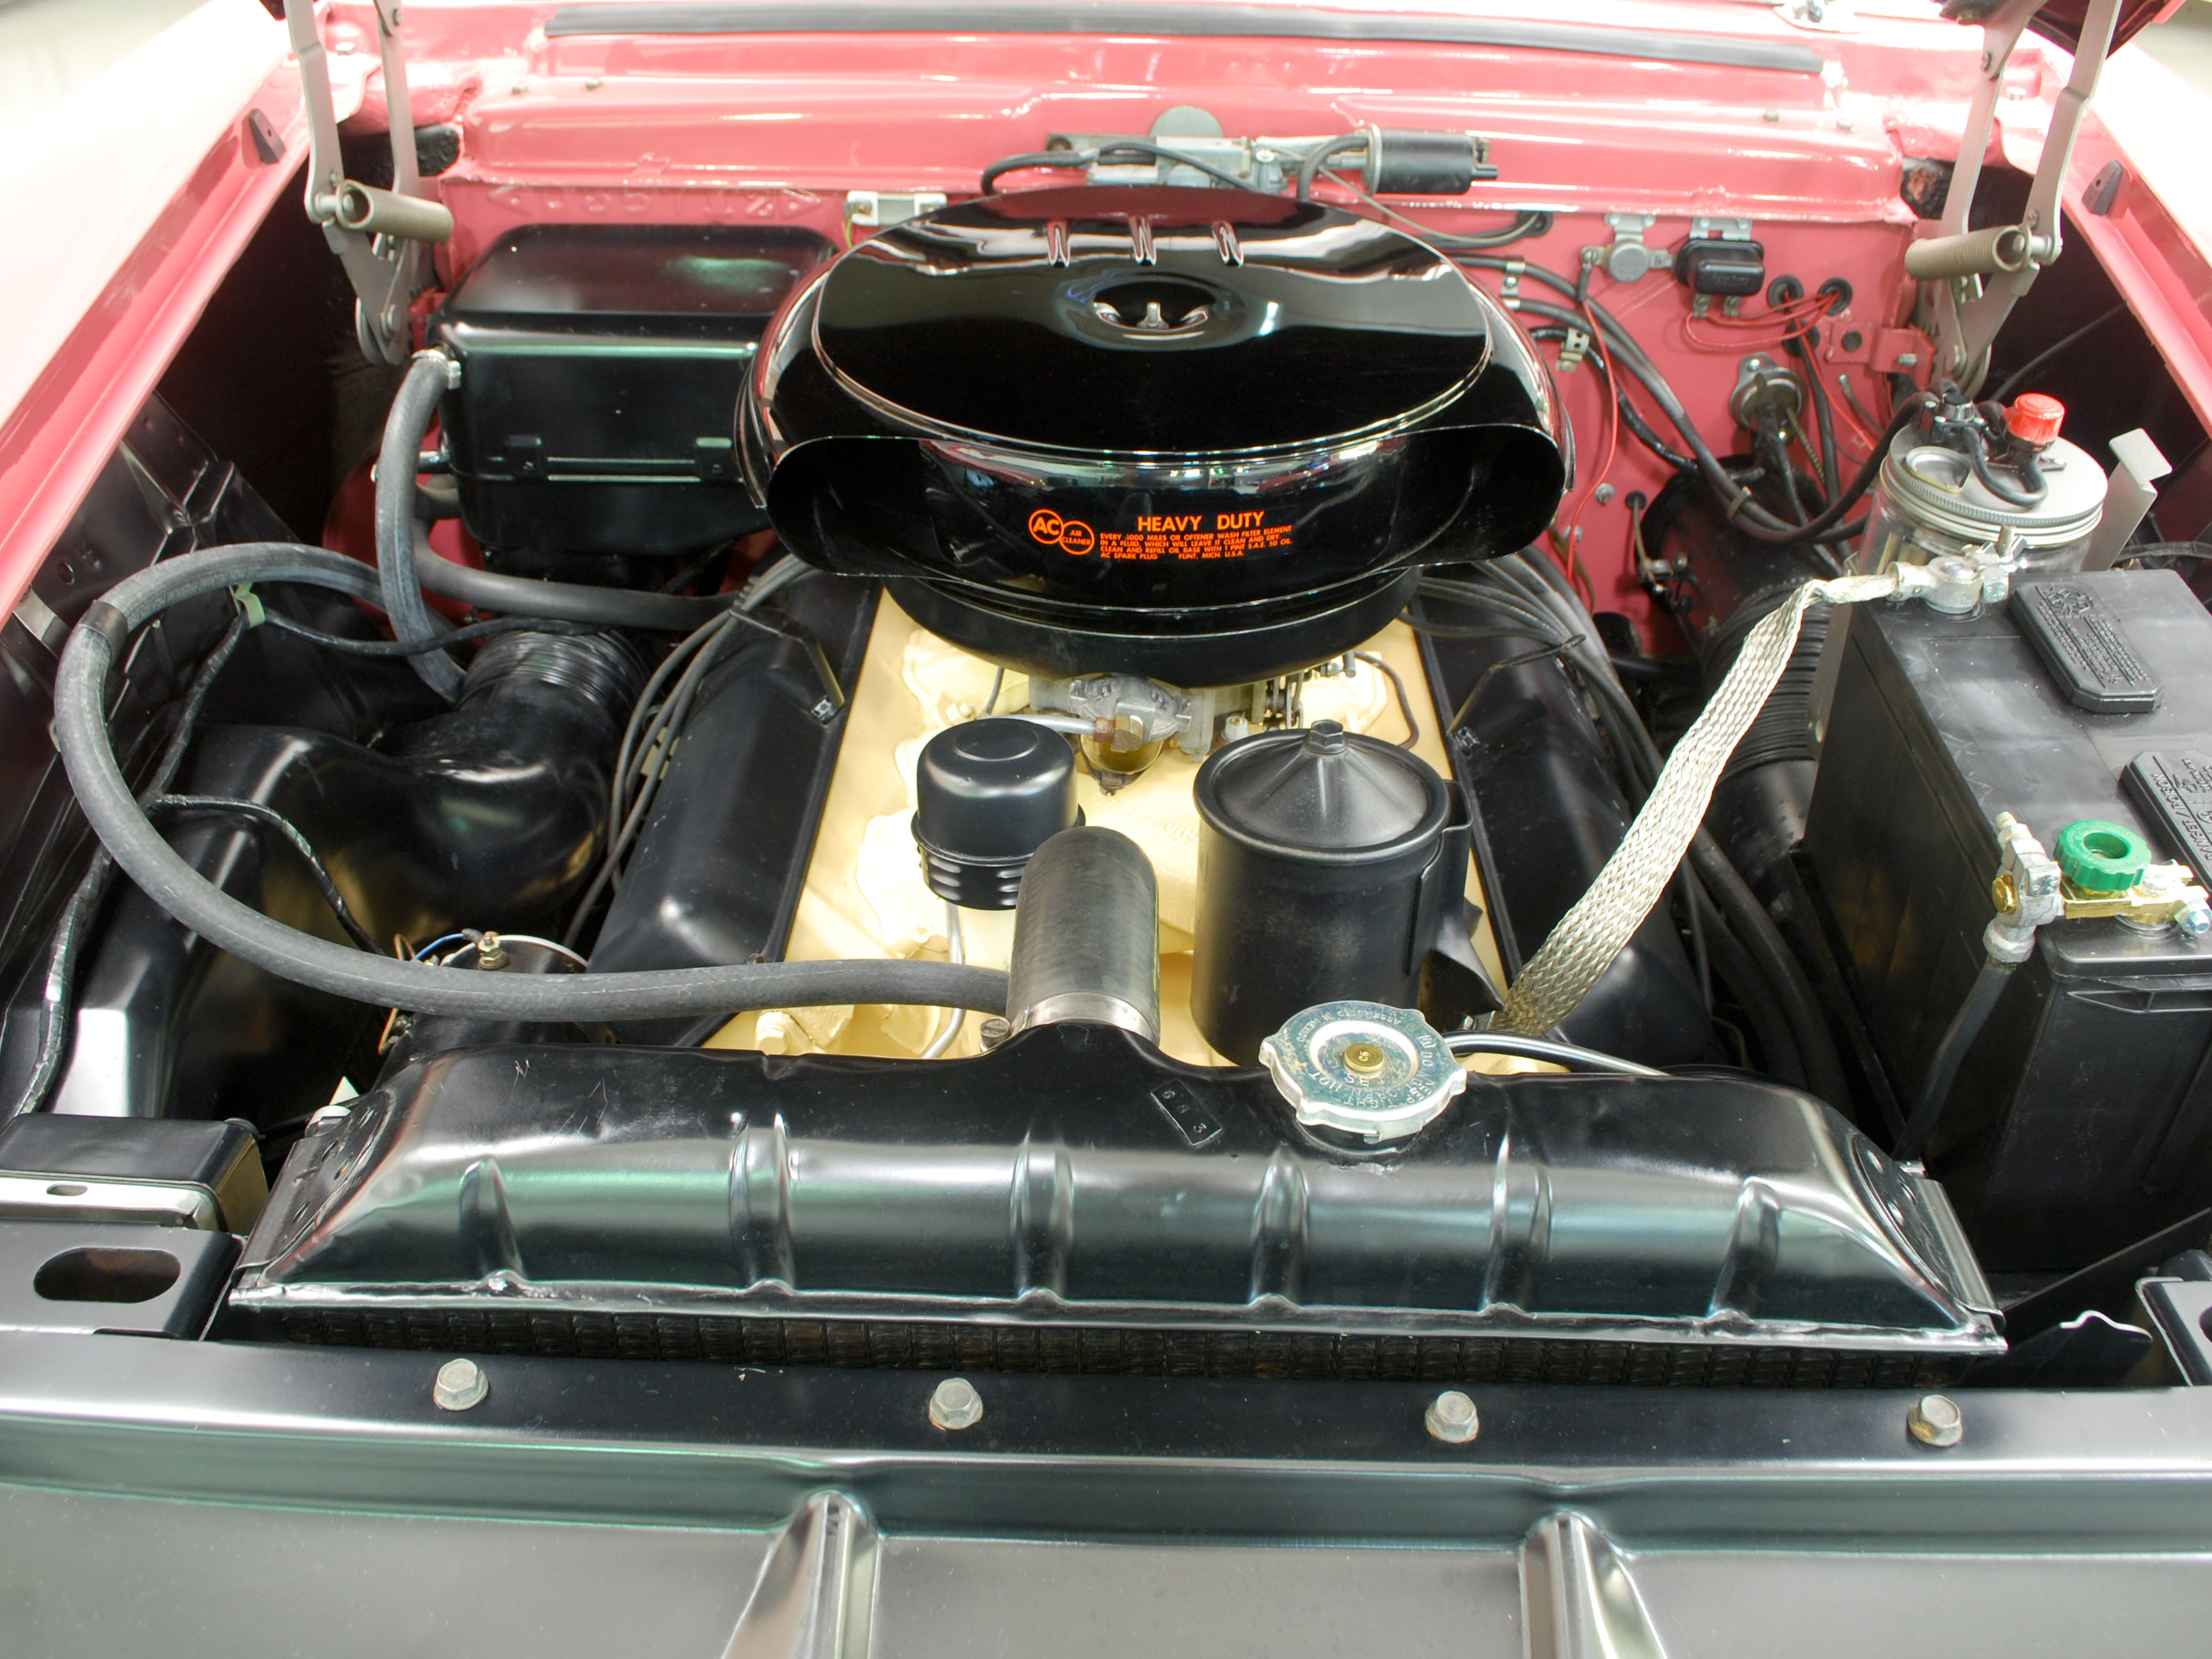 1955 Packard 400